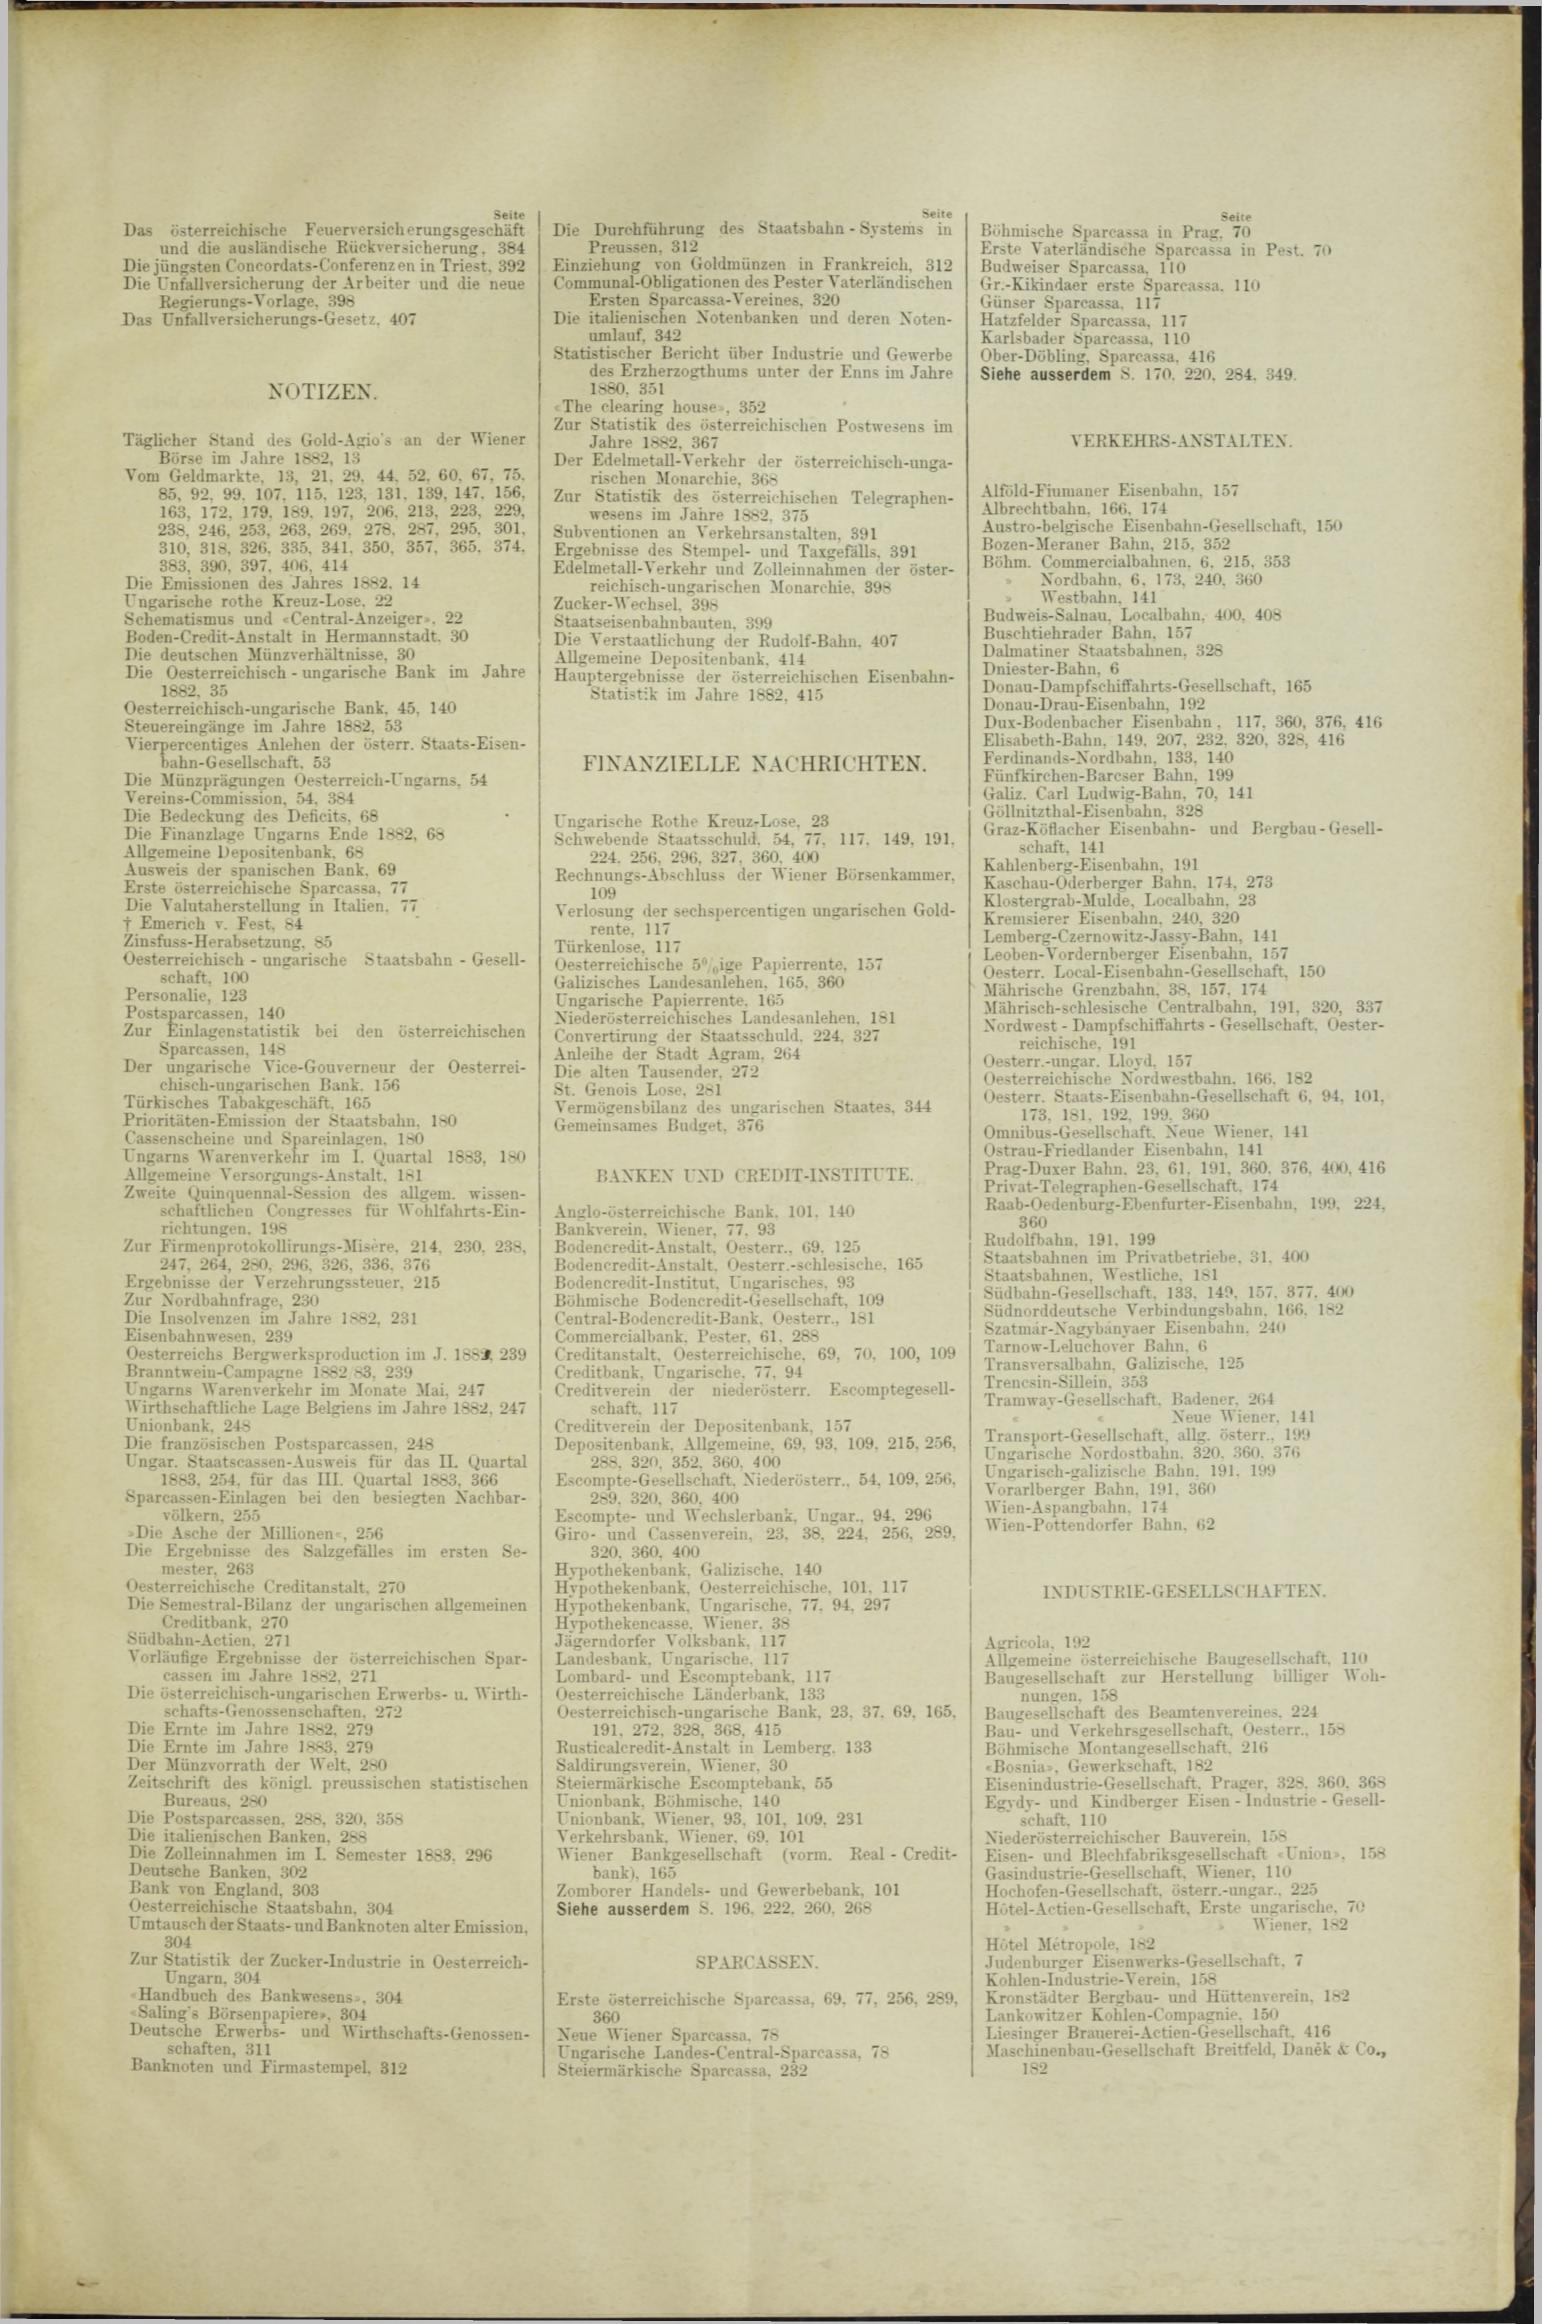 Der Tresor 15.03.1883 - Seite 11